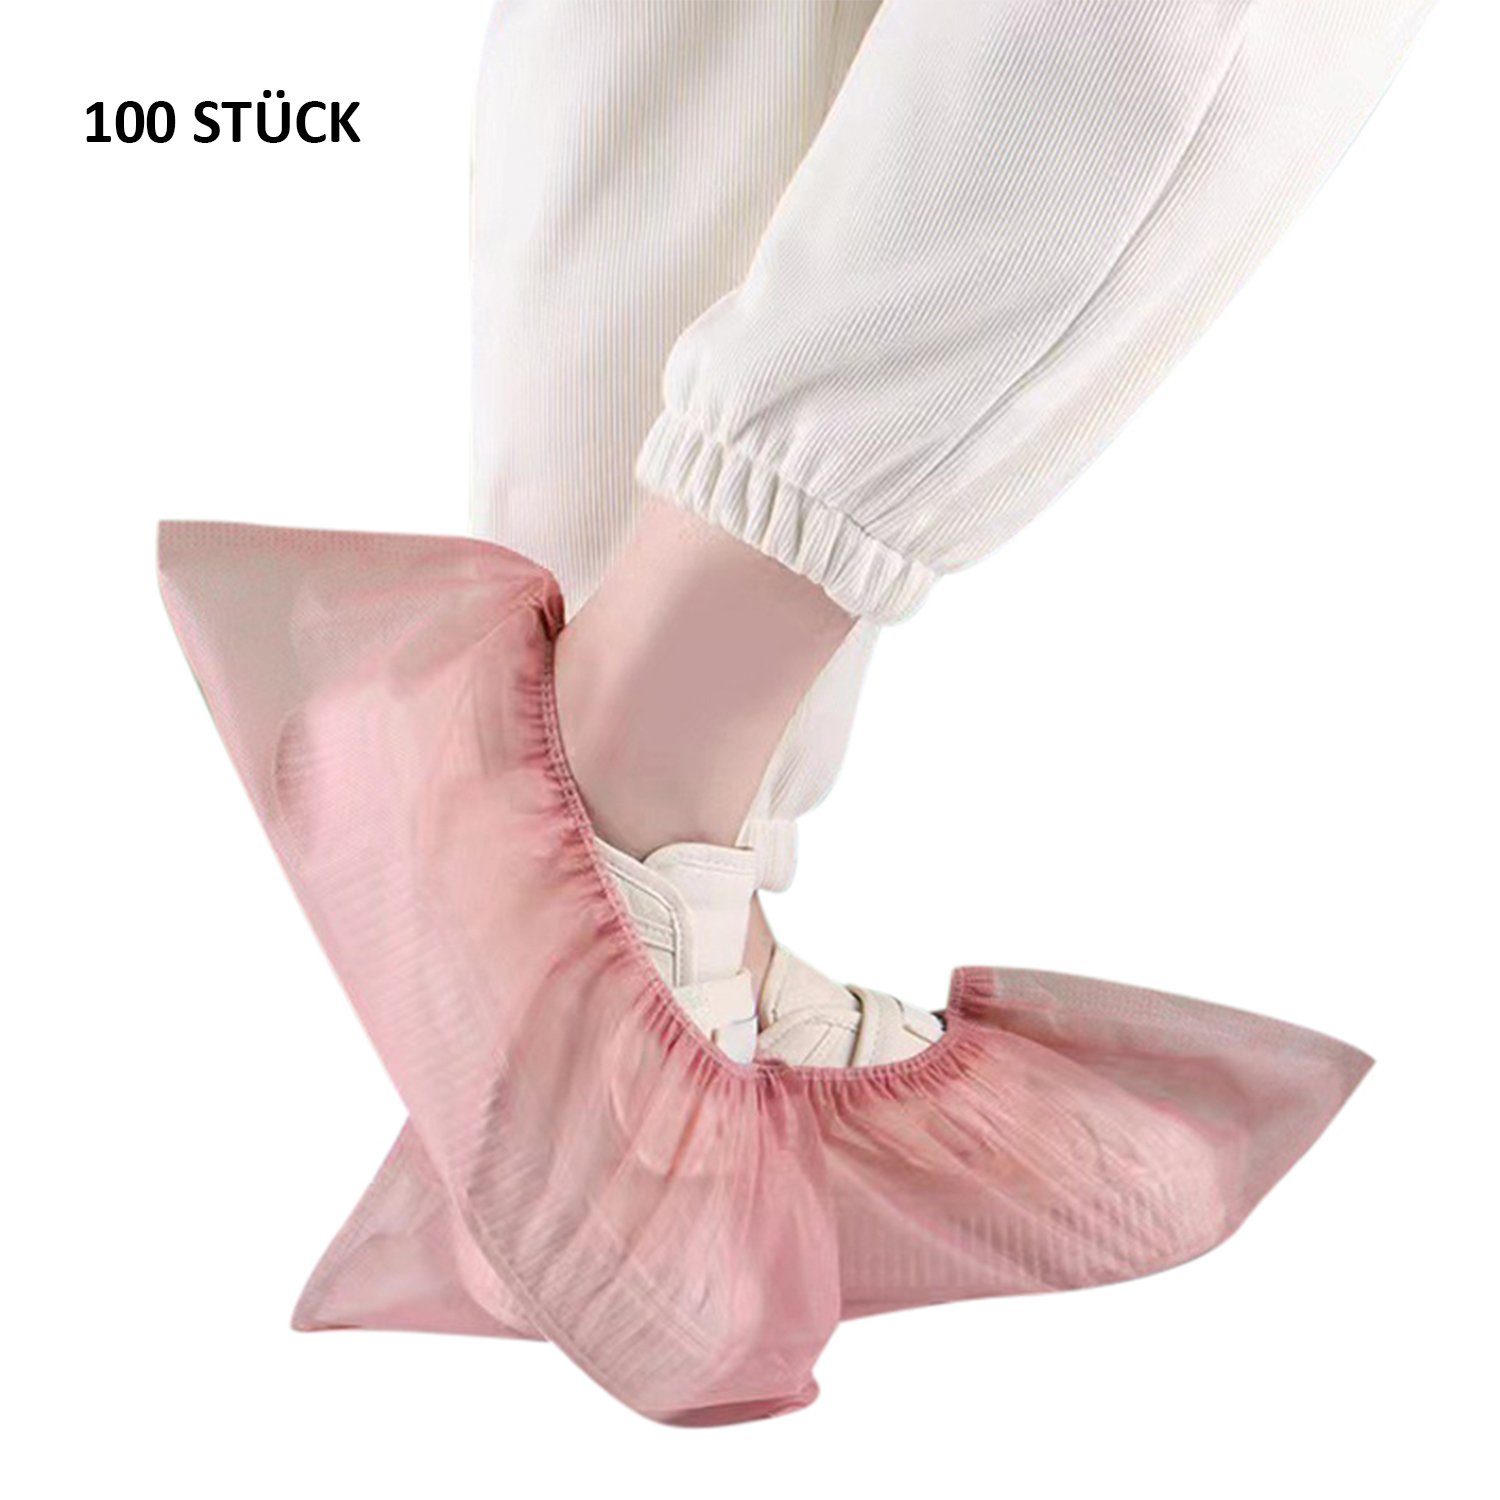 Daisred Rosa 100 Stück Einweg-Stiefel Schuhüberzieher hygienische Schuhüberzieher rutschfest